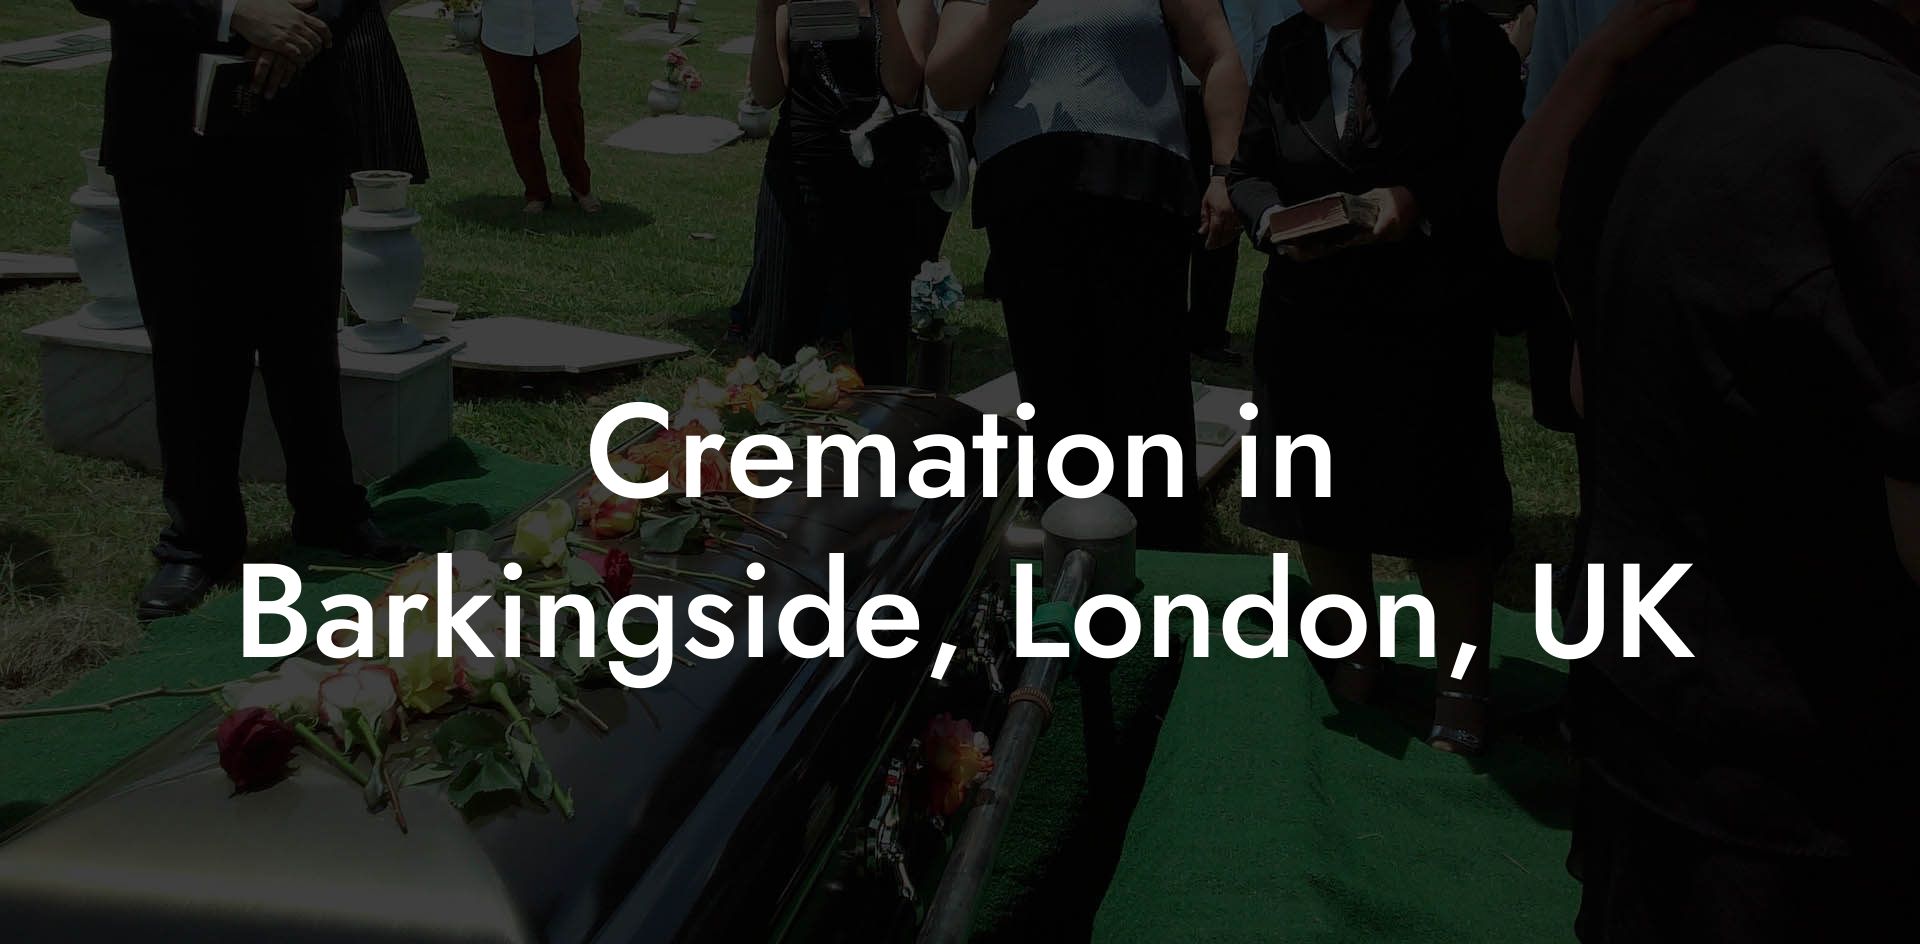 Cremation in Barkingside, London, UK